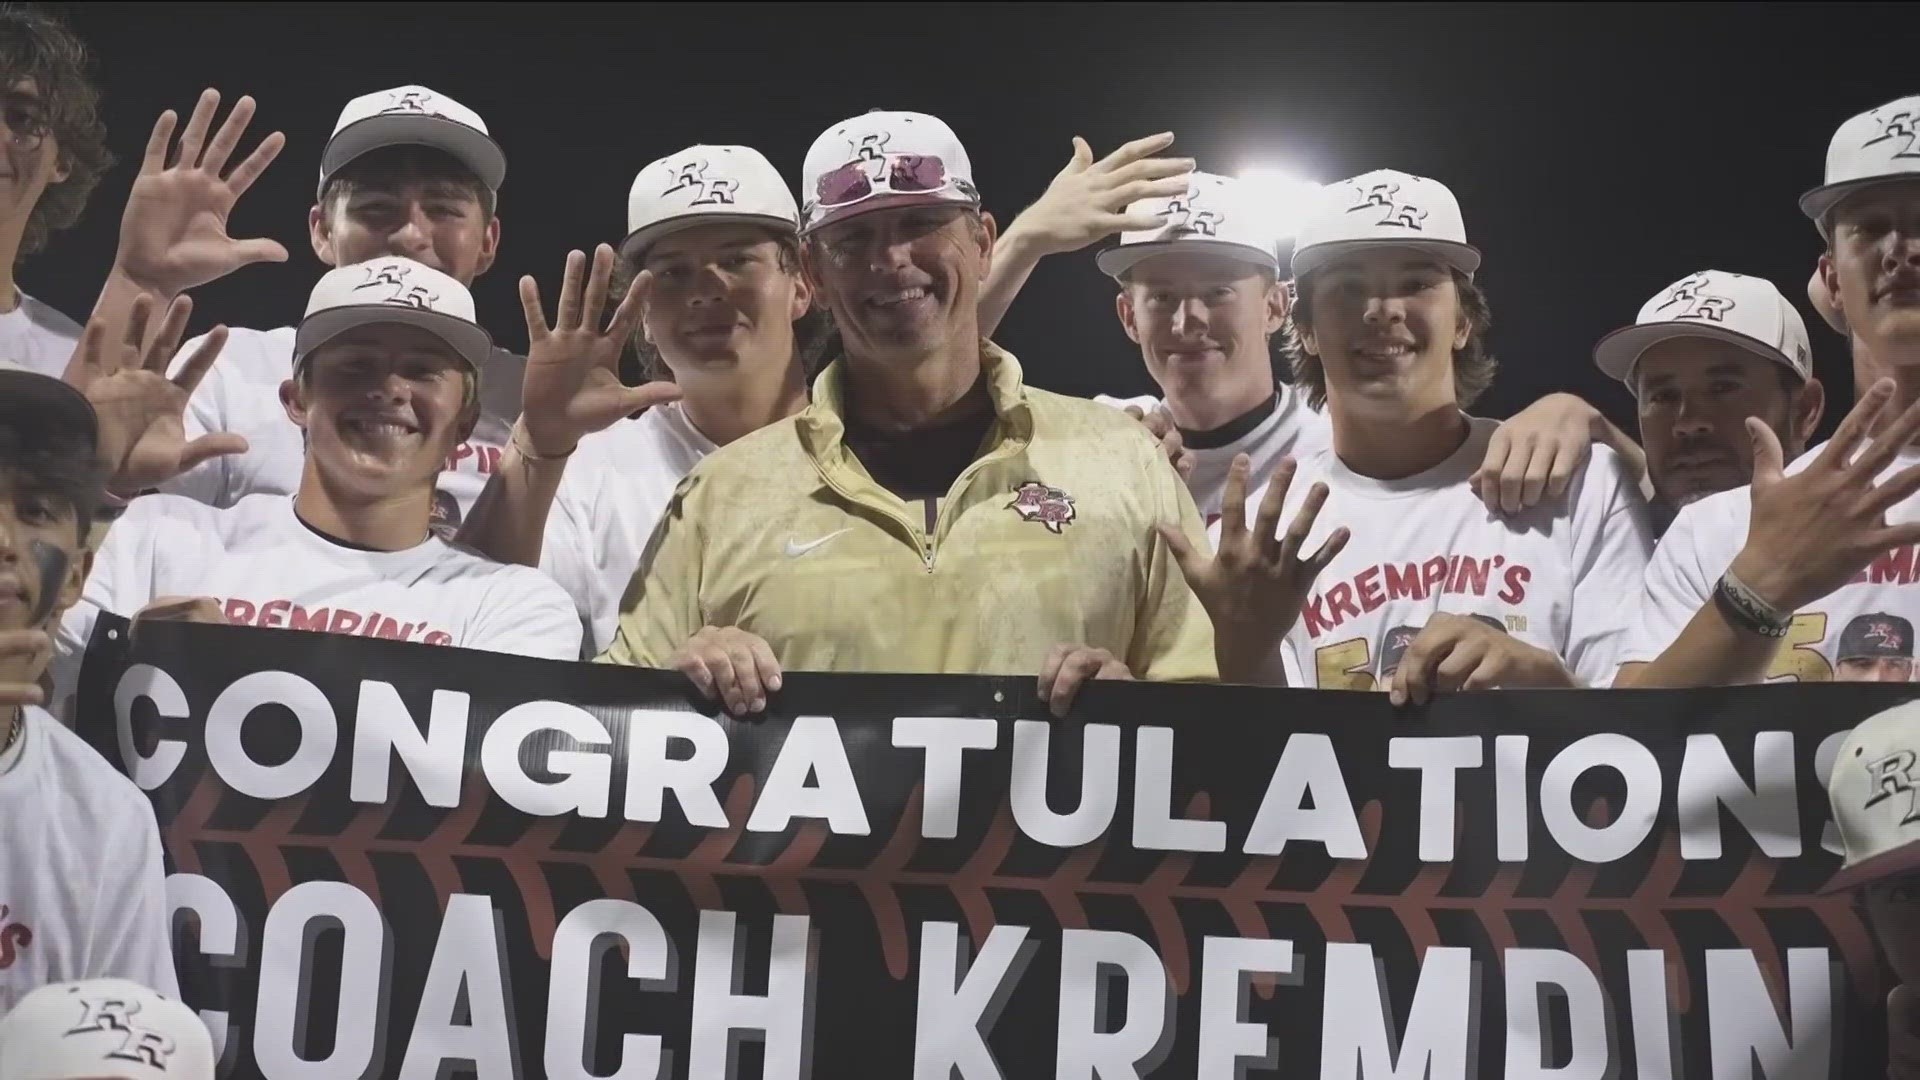 A Burnet High School alumnus, Coach Chad Krempin is in his 22nd season as a head coach.